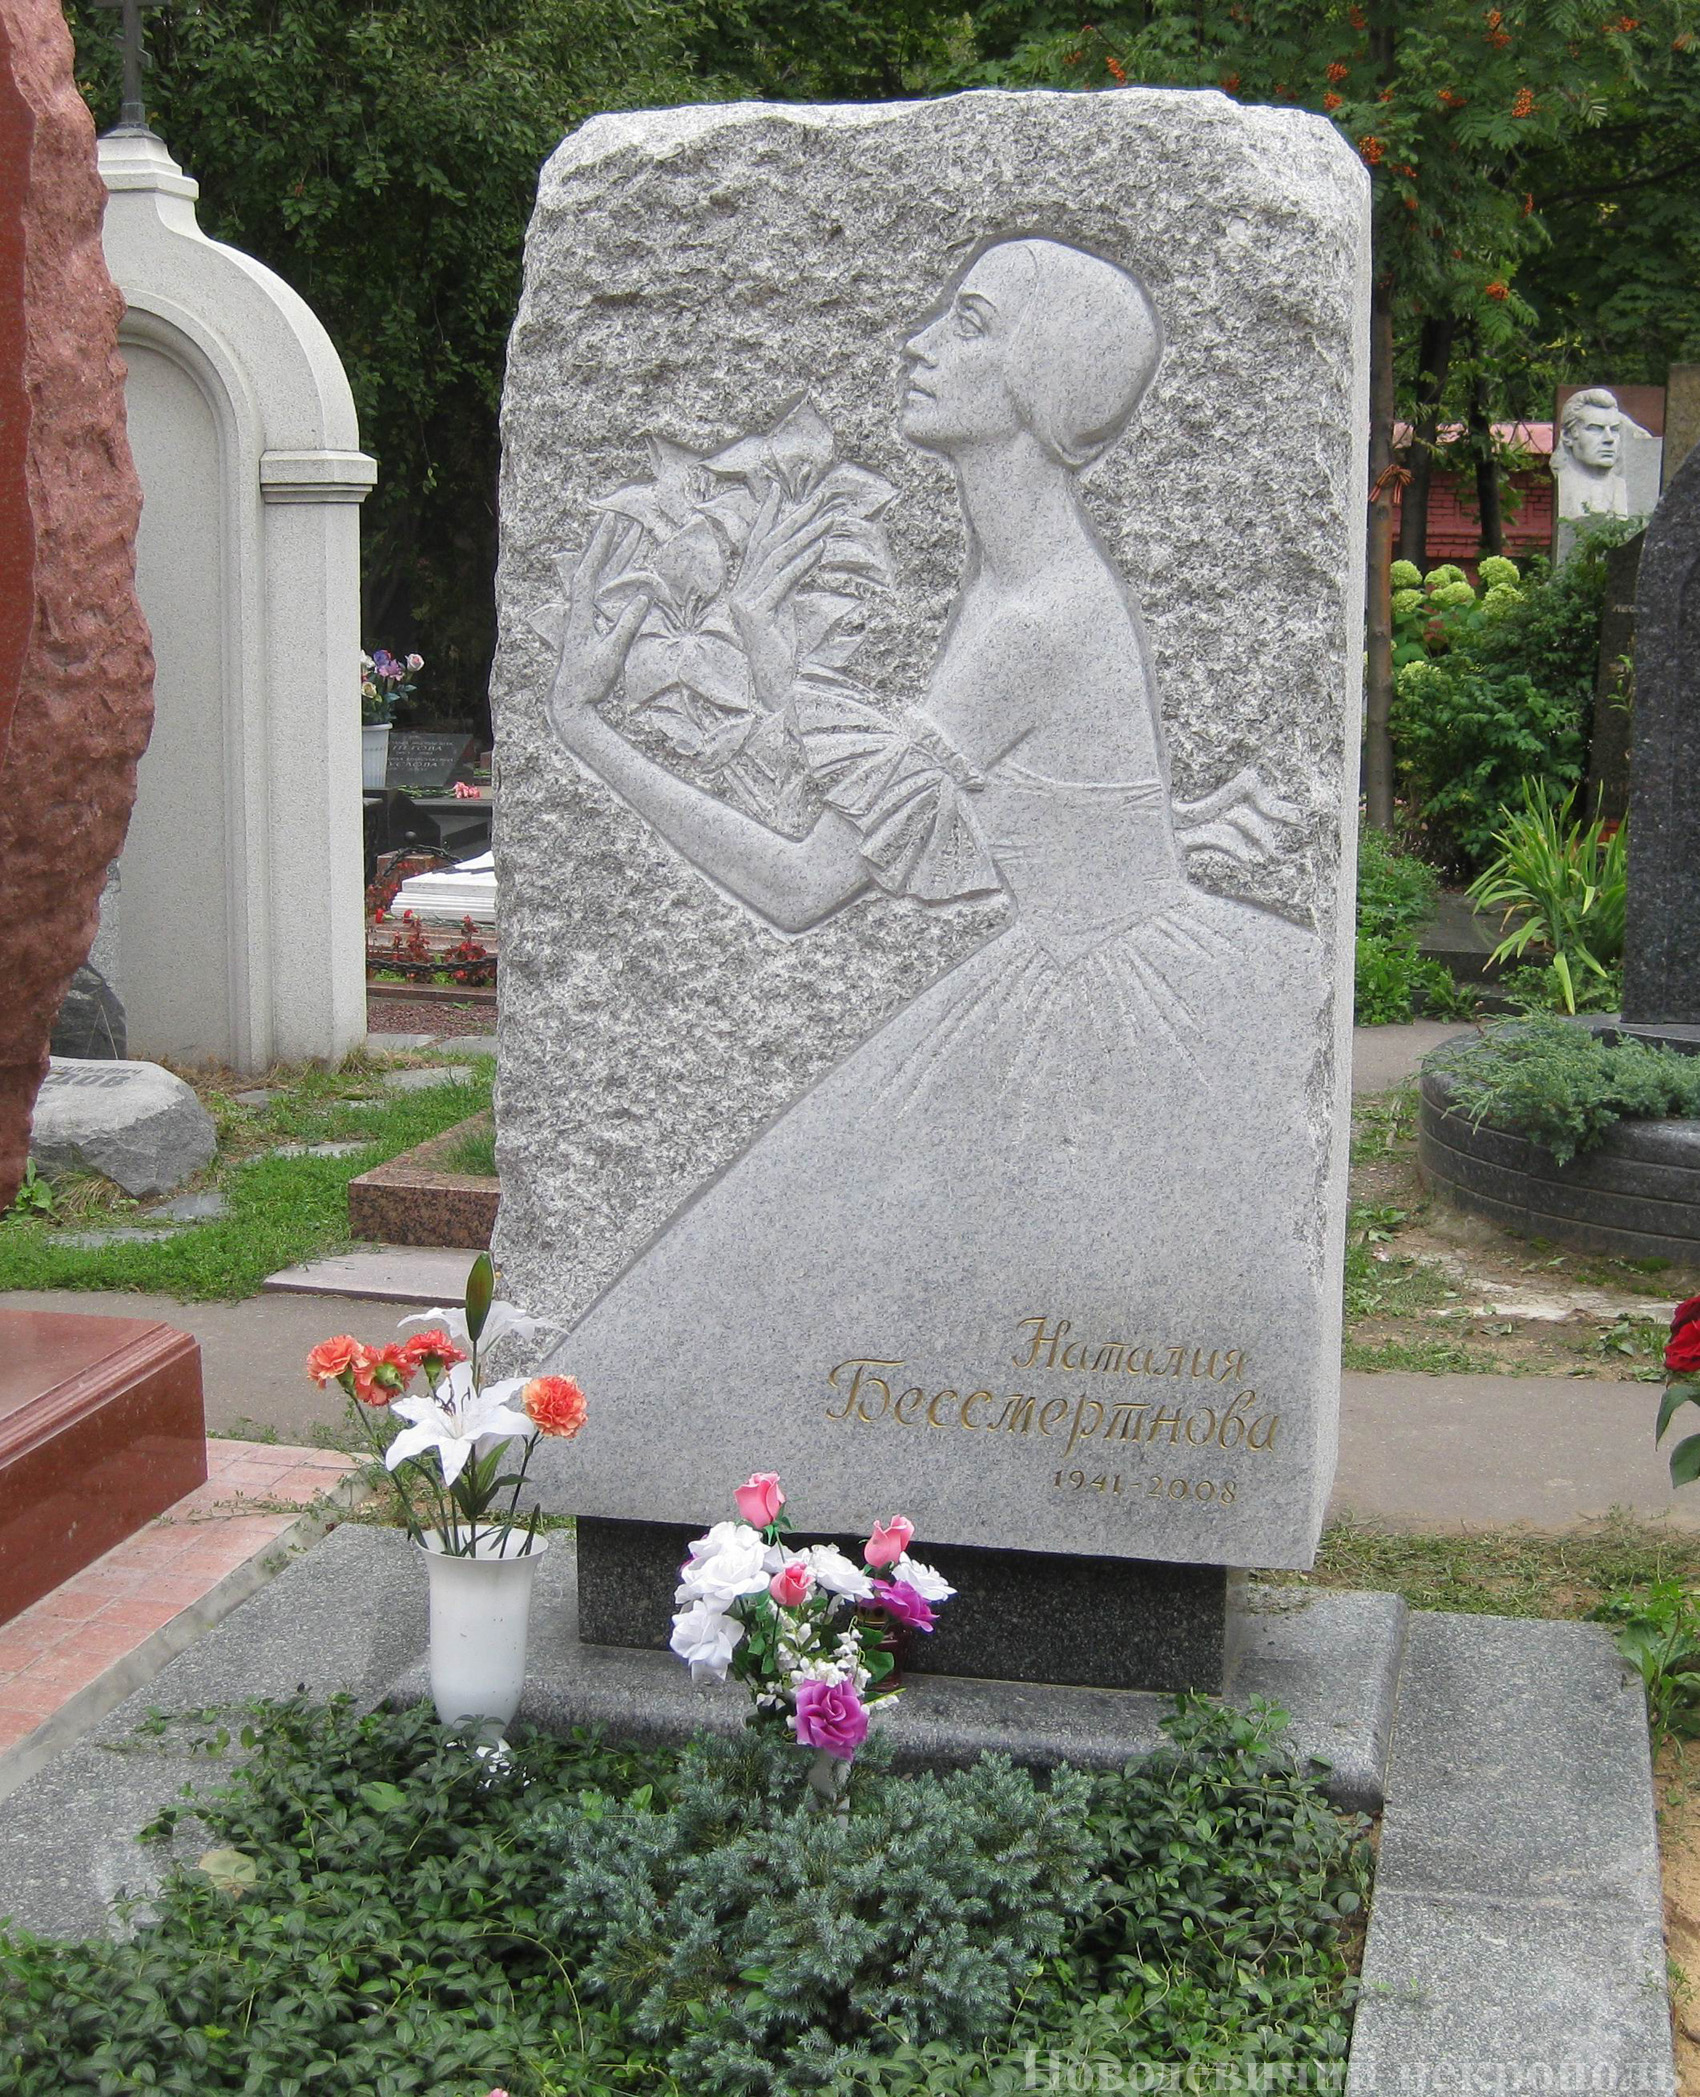 Памятник на могиле Бессмертновой Н.И. (1941-2008), ск. М.Милашенко, на Новодевичьем кладбище (10-10-3).